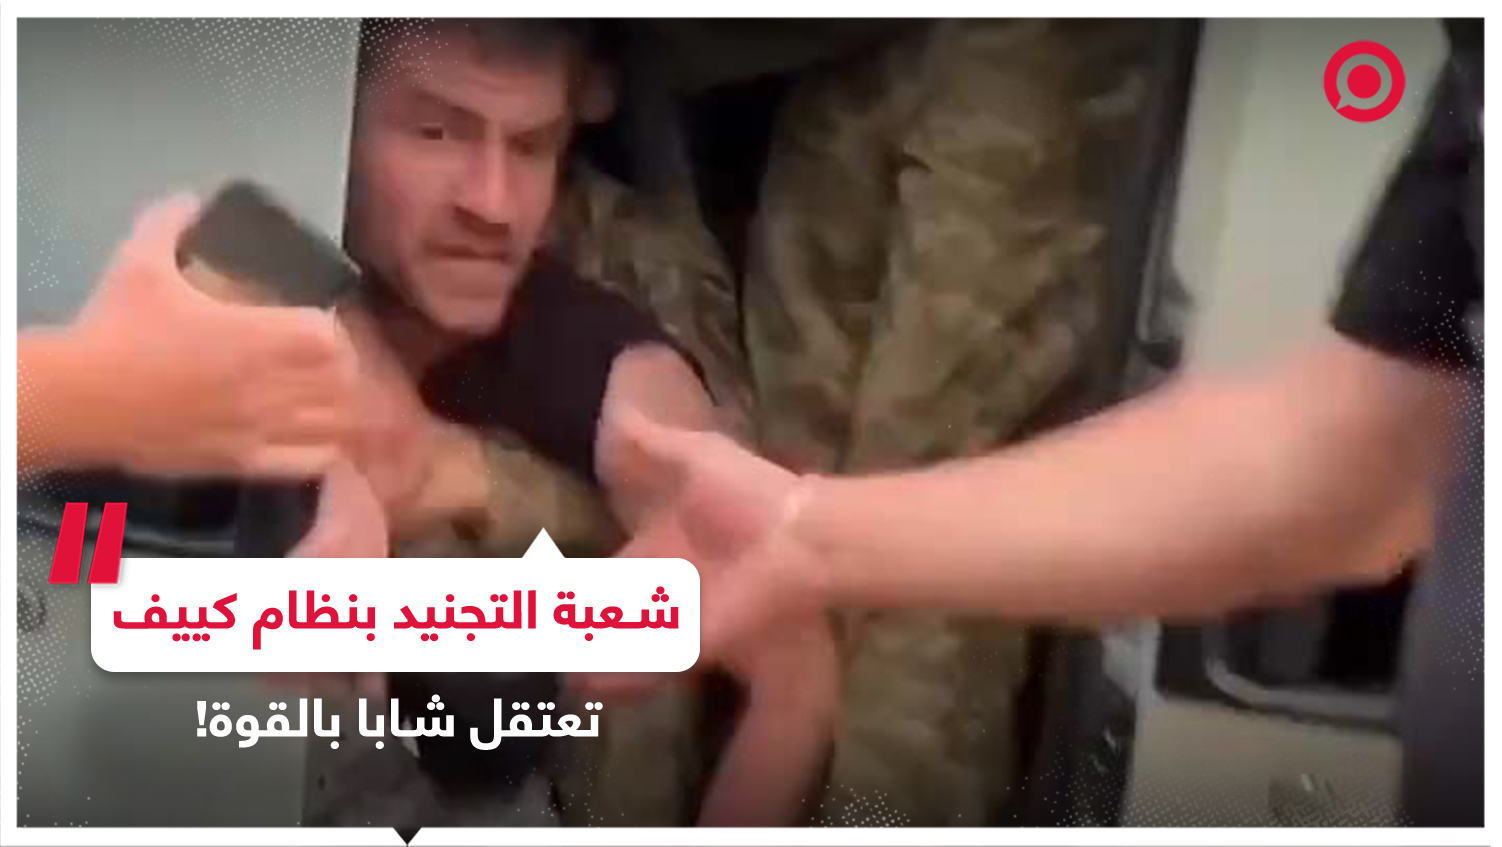 جنود شعبة التجنيد الإلزامي بنظام كييف يحاولون اعتقال شاب بالقوة لإرساله للجبهات